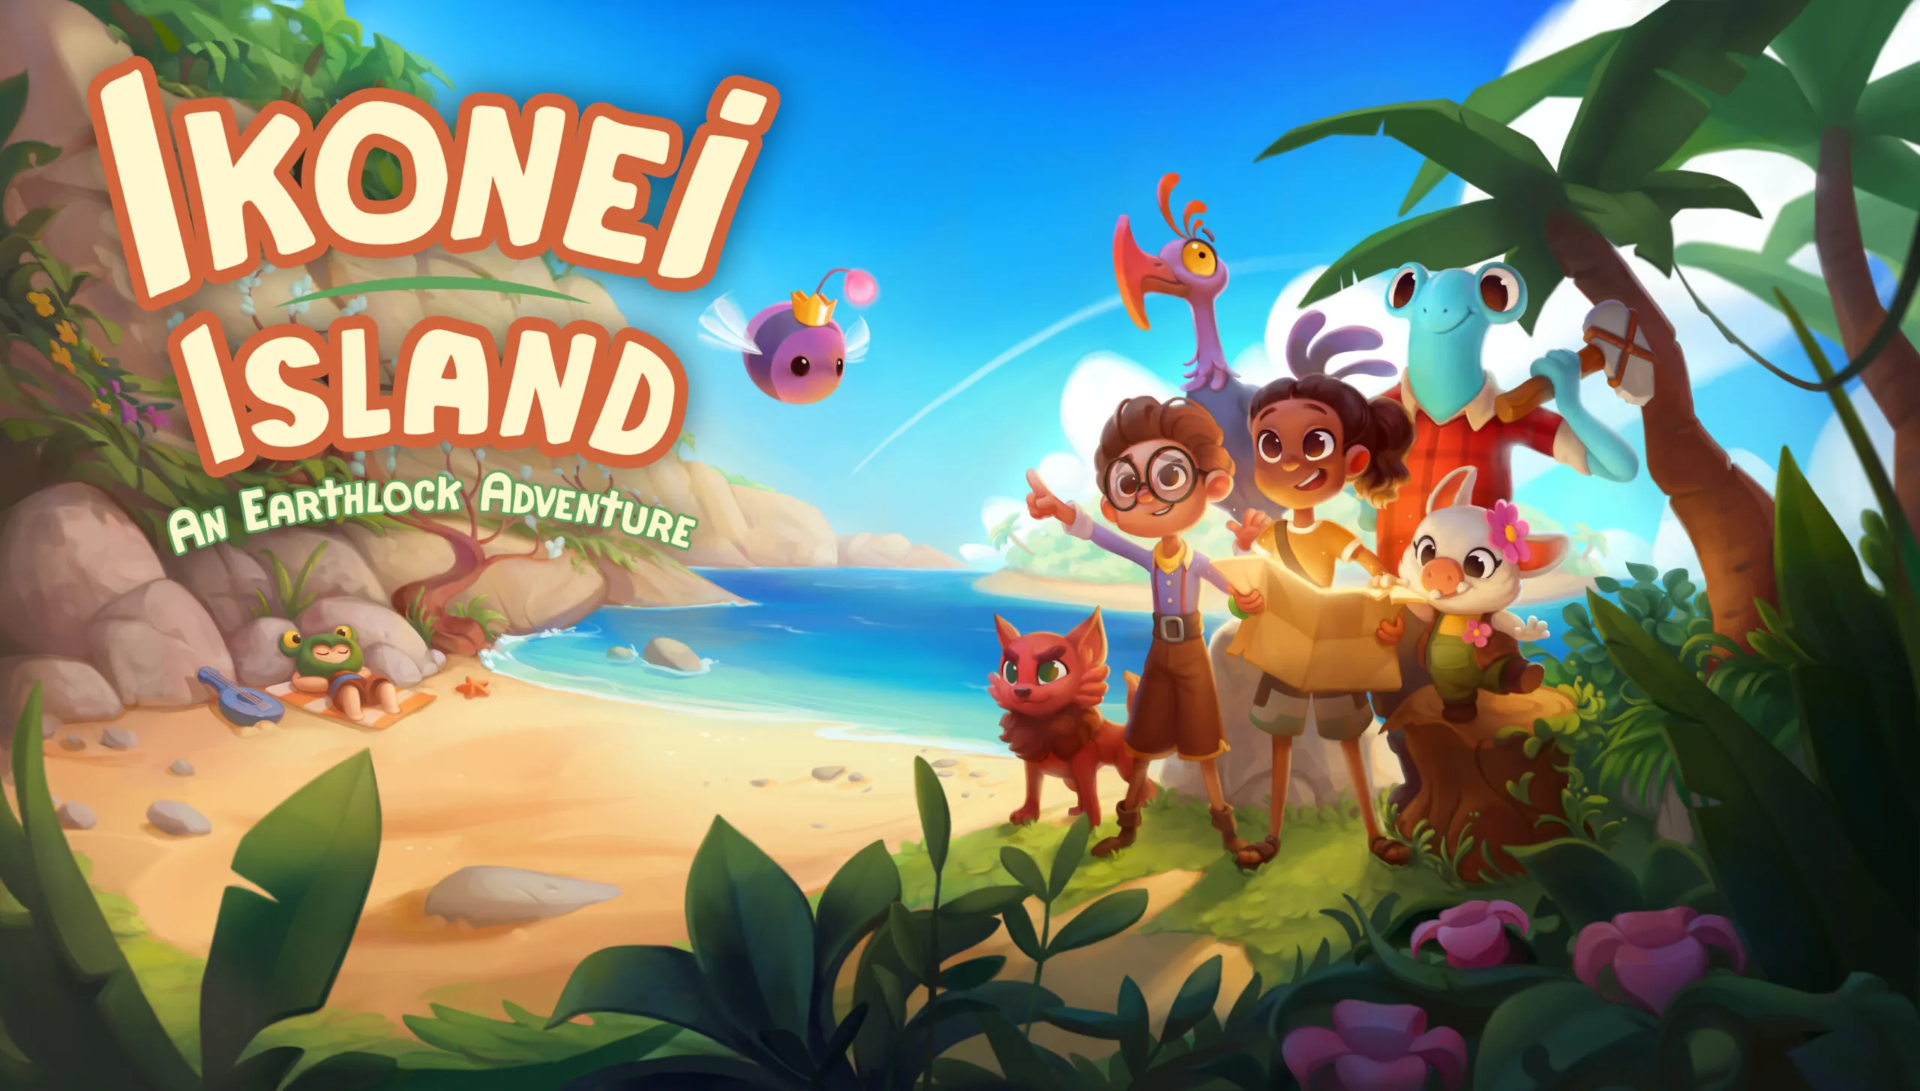 Ikonei Island: An Earthlock Adventure HD Wallpaper